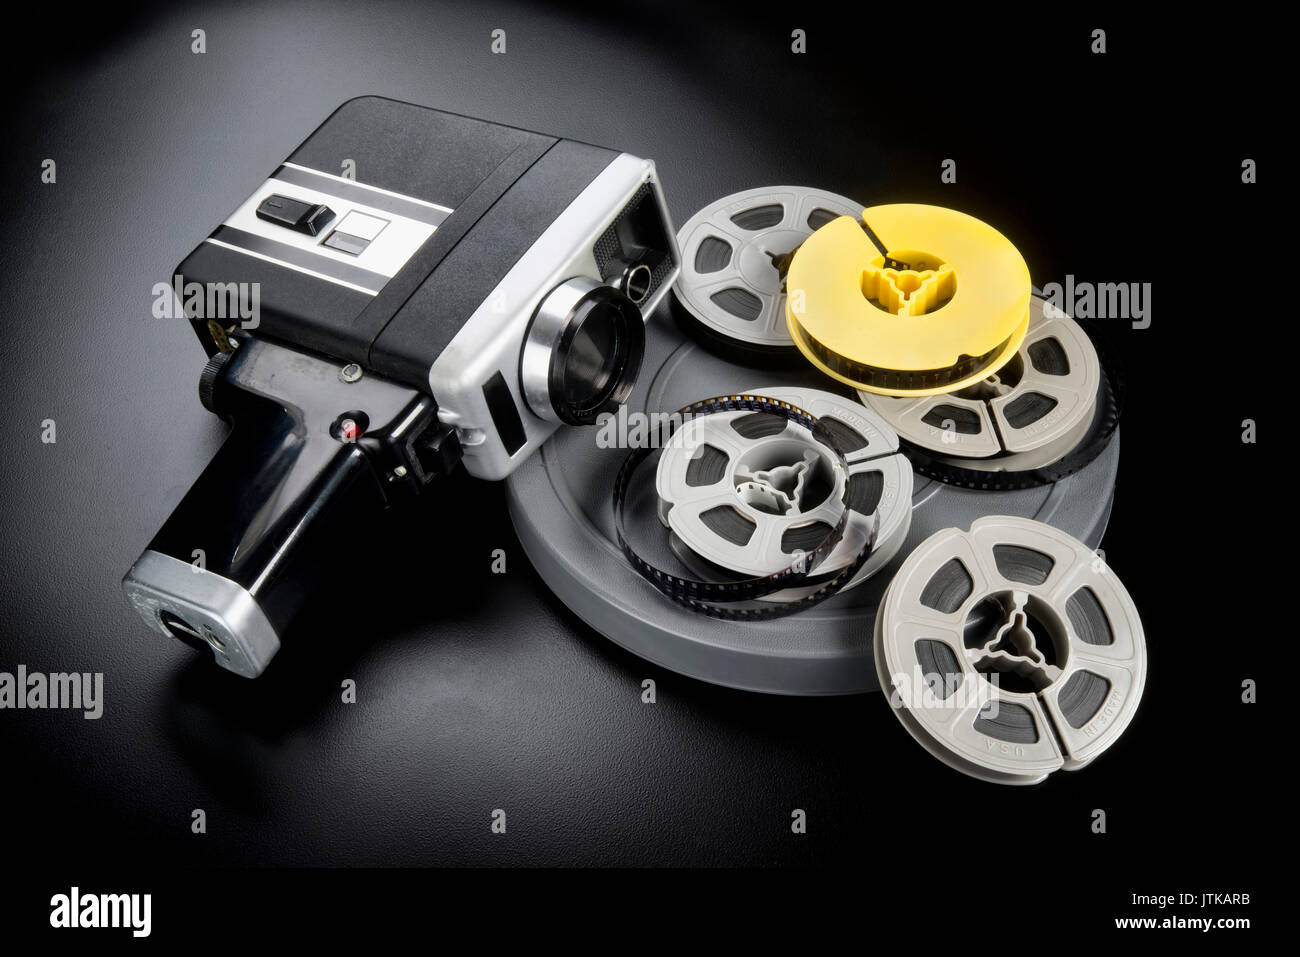 8mm Film Kamera- und Filmrollen. Stockfoto